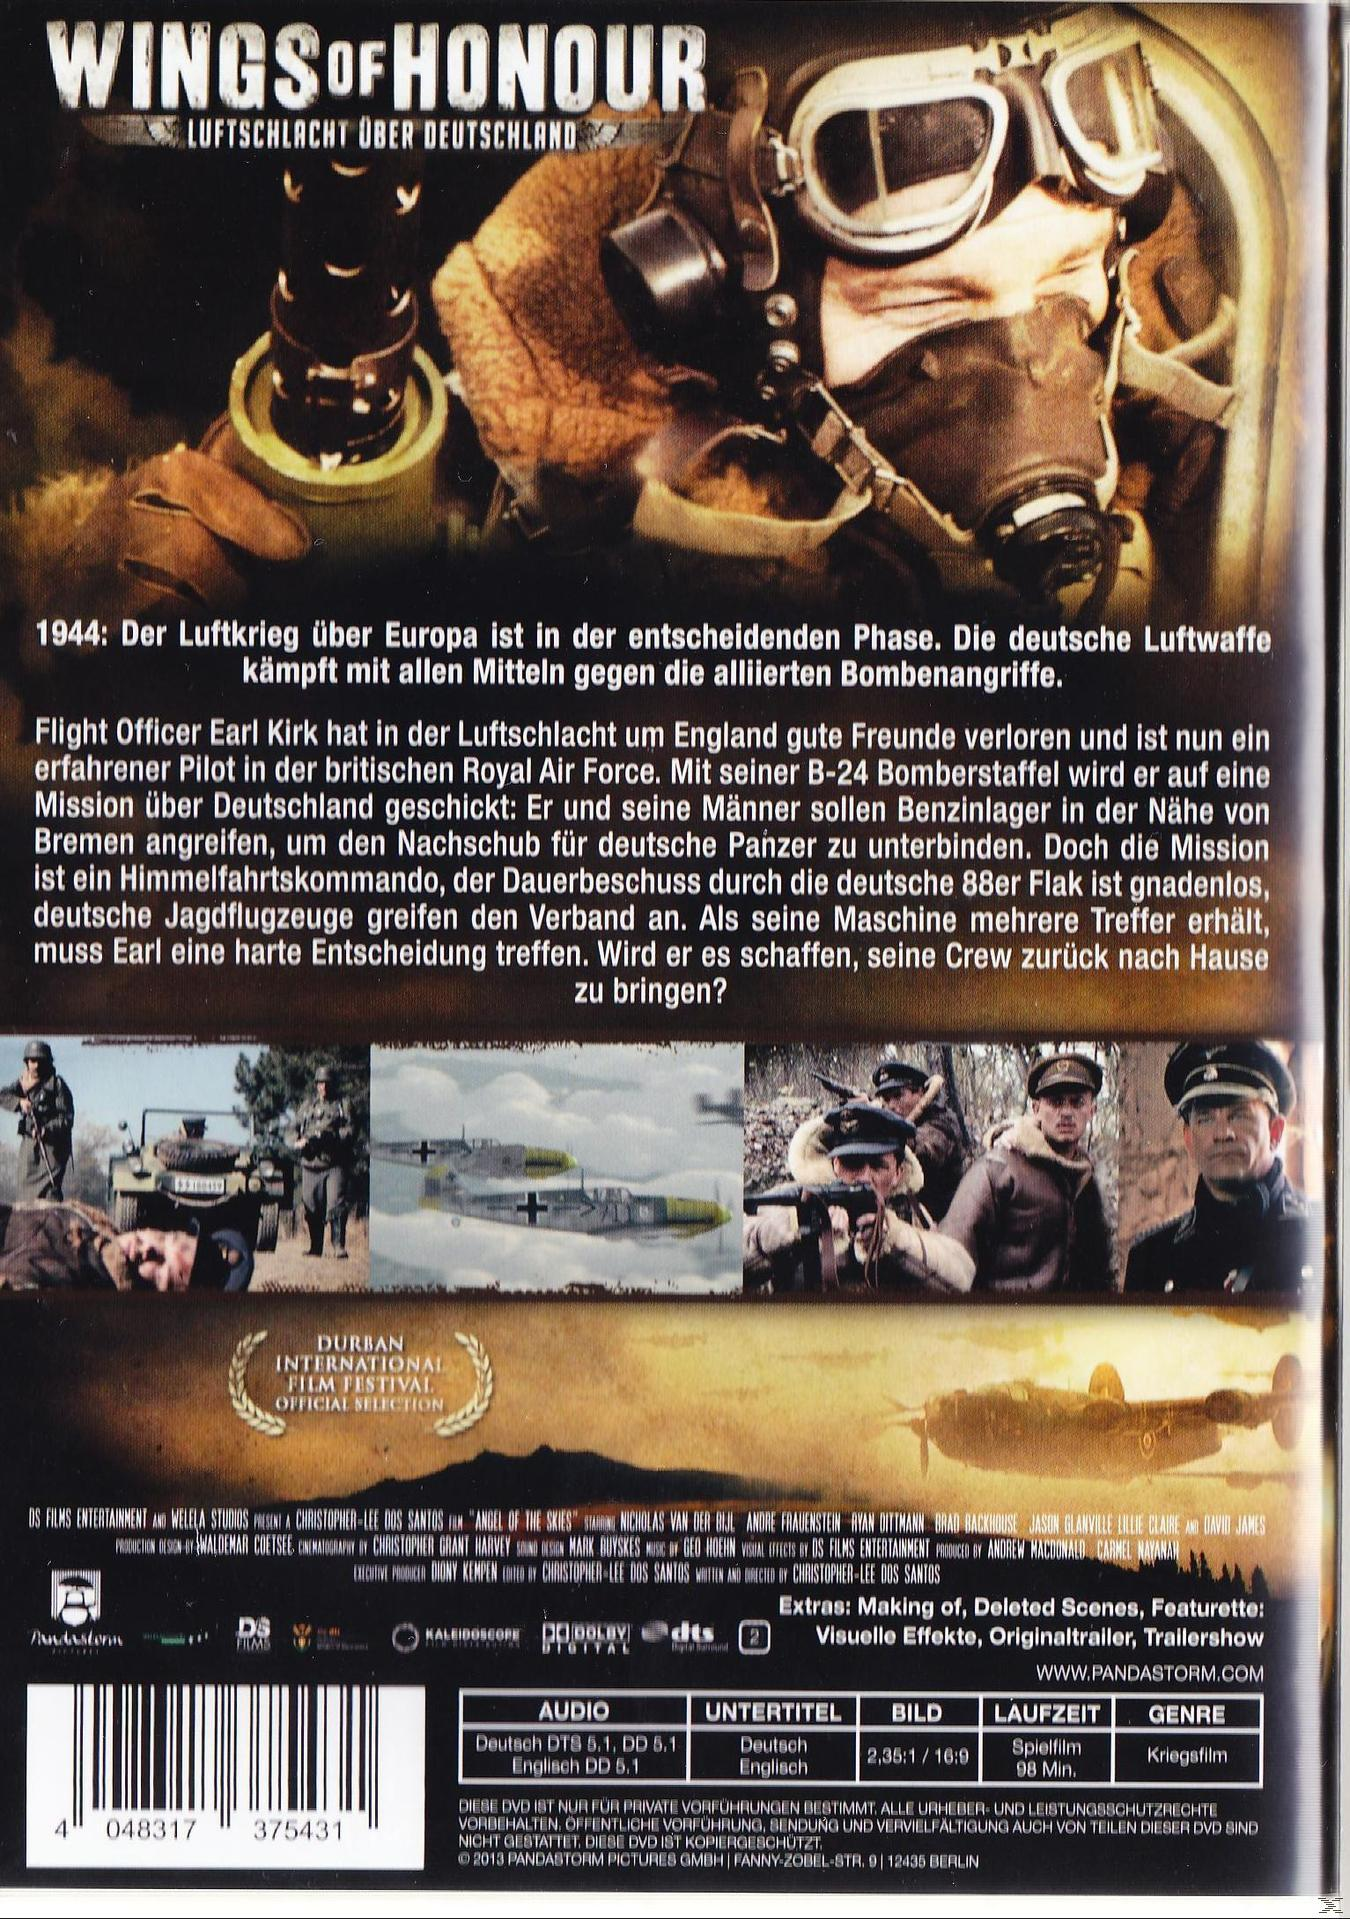 Wings of Honour – Deutschland DVD über Luftschlacht